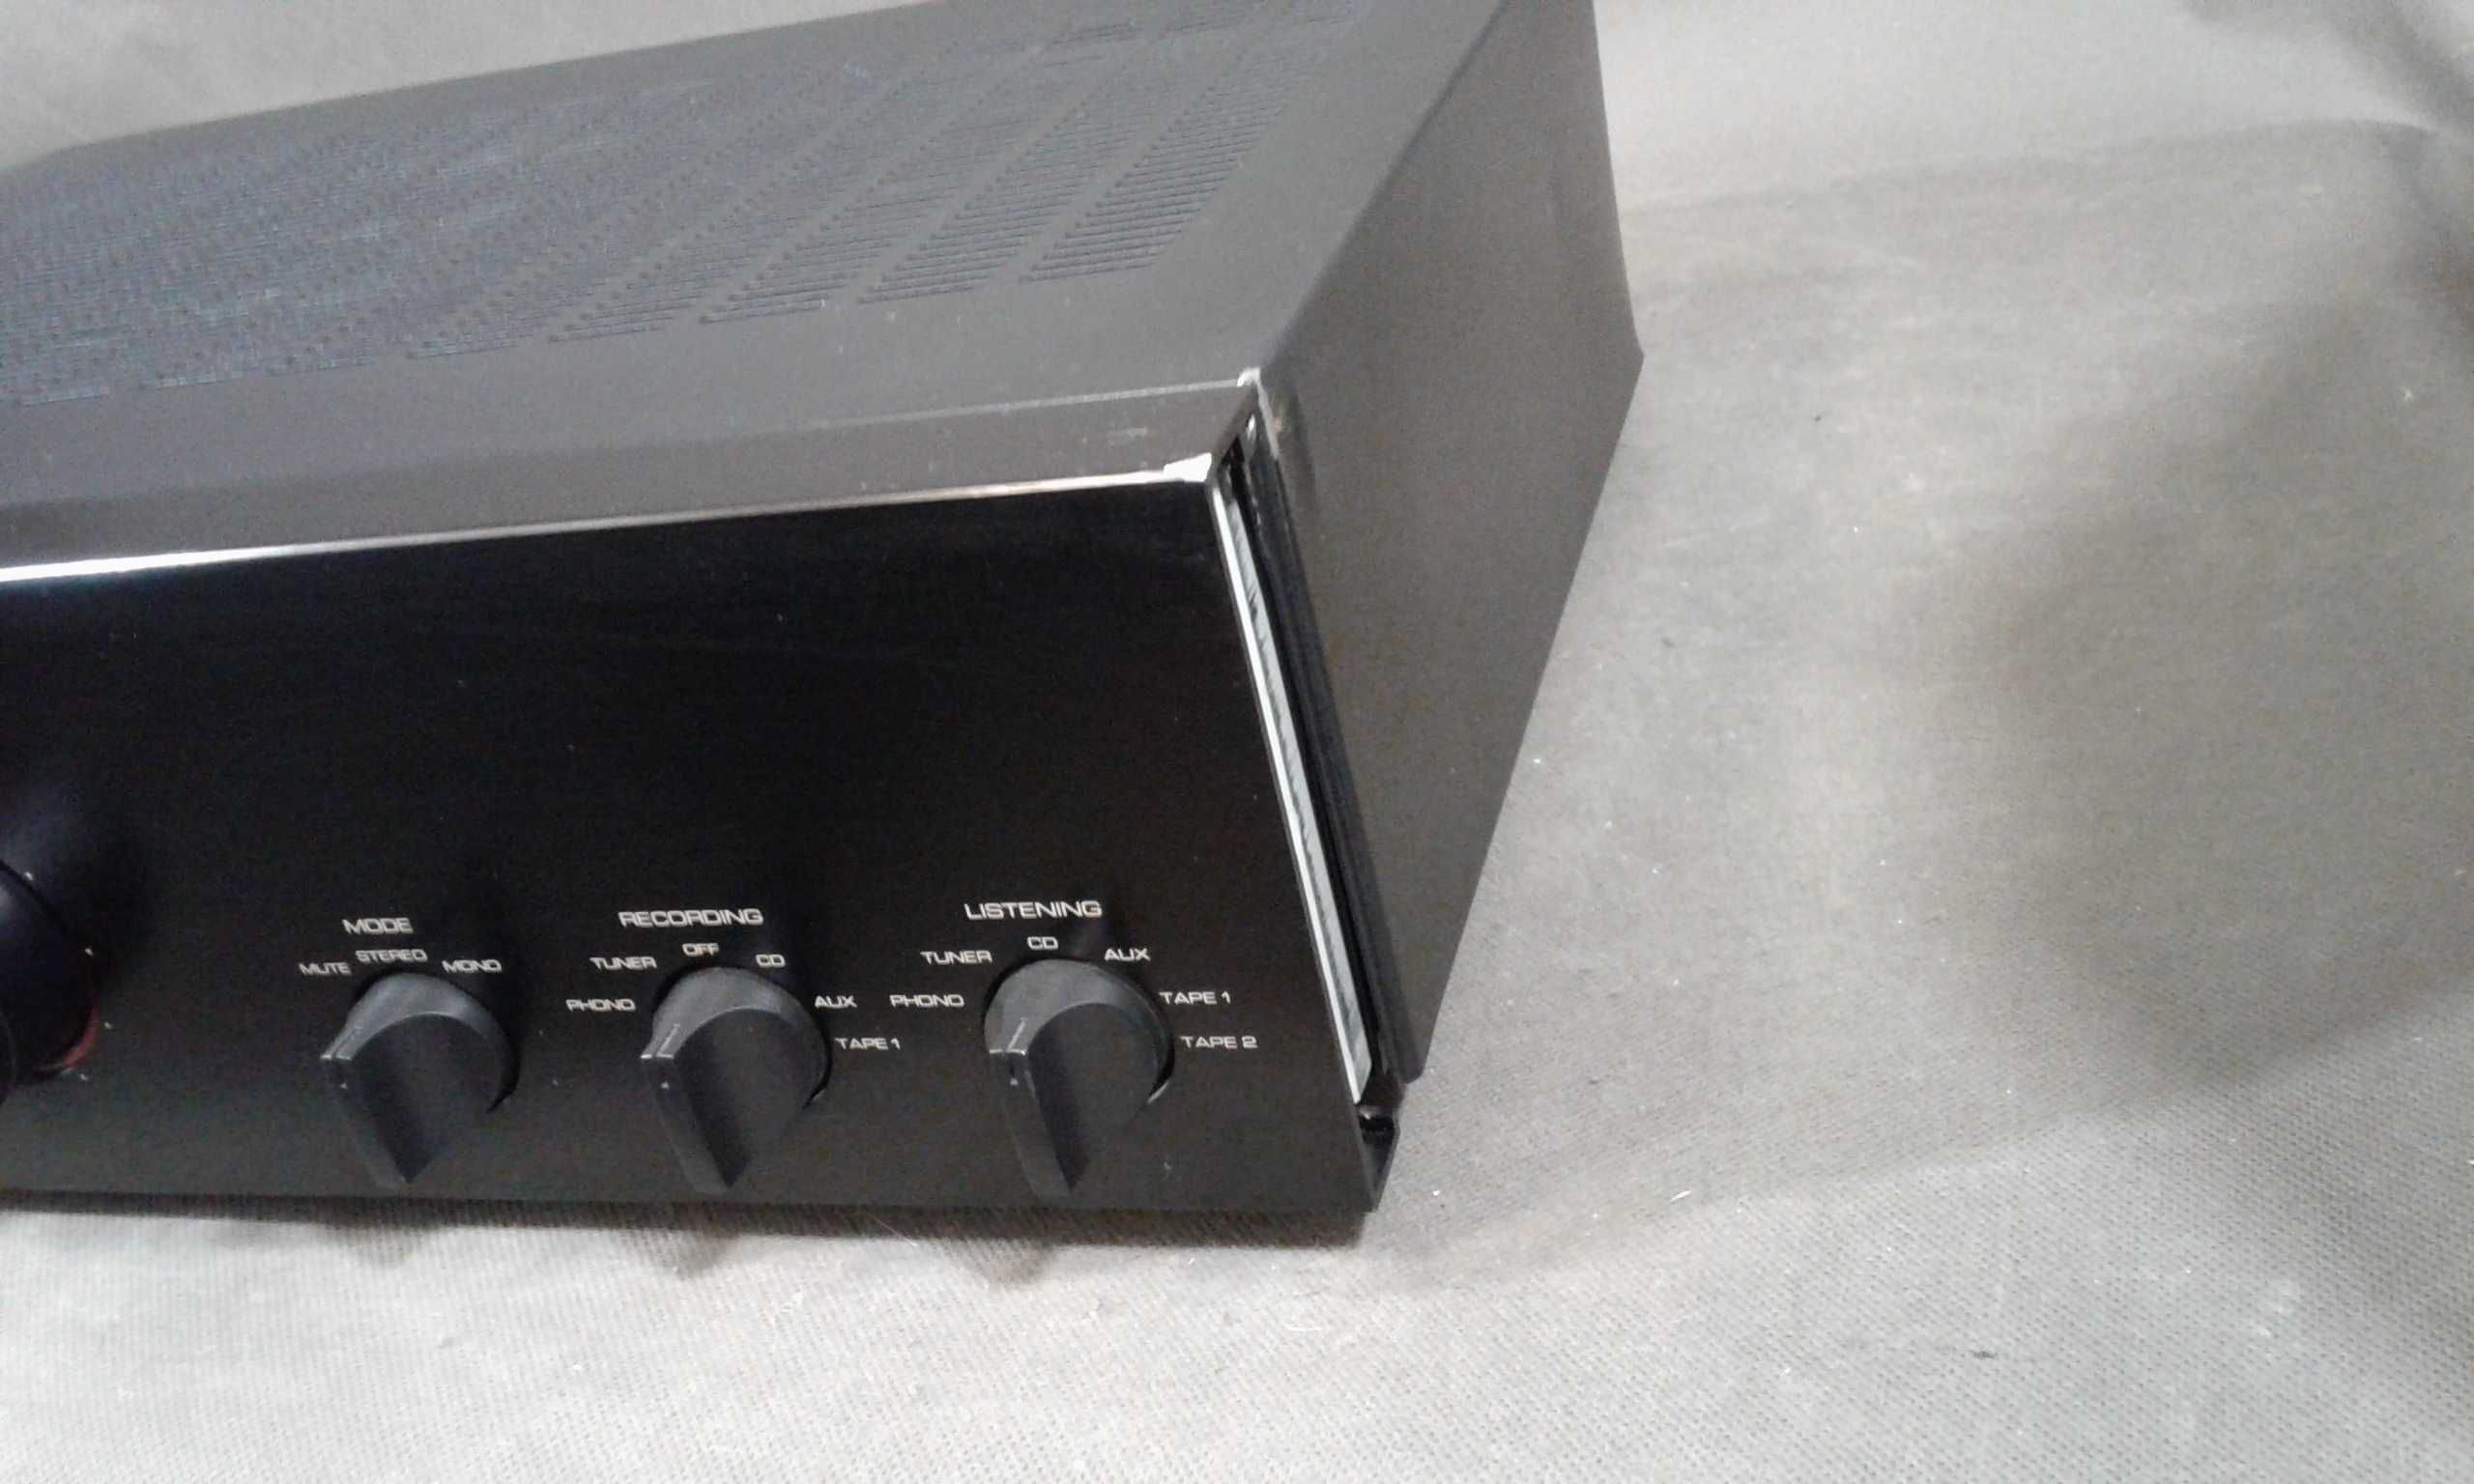 ROTEL RA-980BX,wzmacniacz stereo